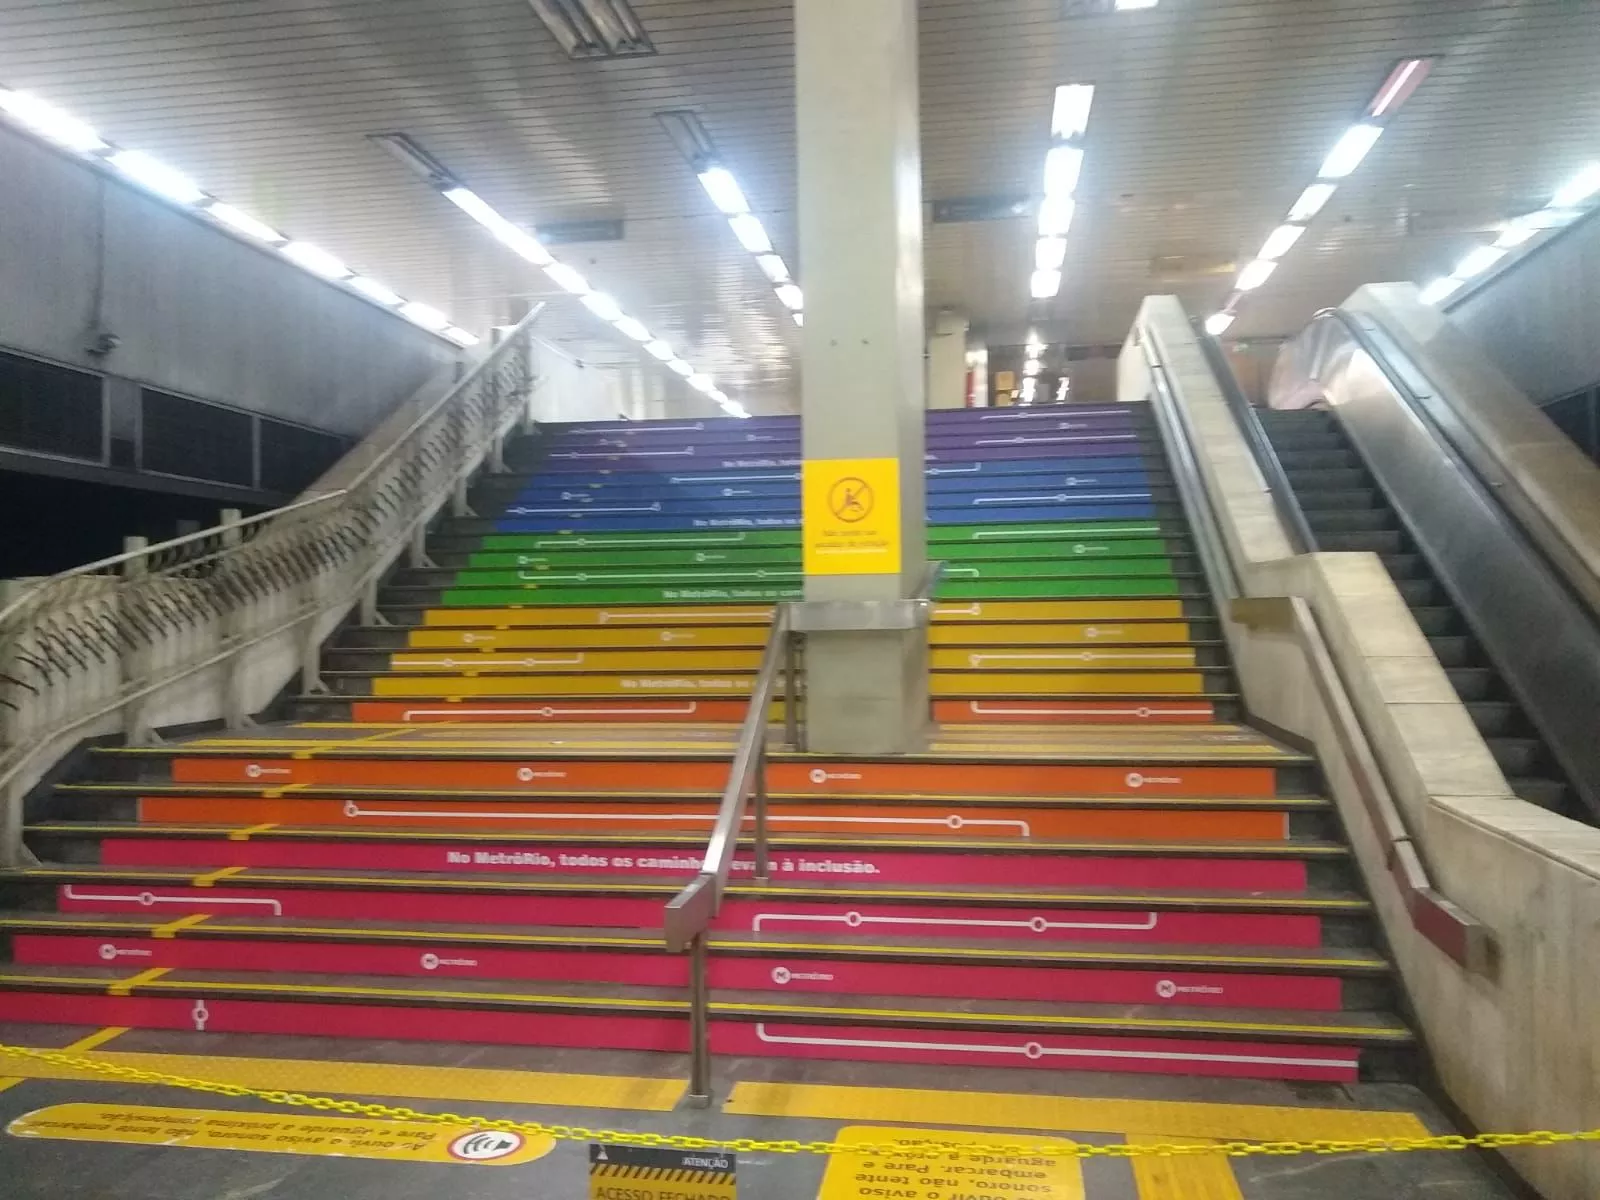 Cidade do Rio se cobre com as cores do arco-íris para festejar o Dia  Internacional do Orgulho LGBTQIAP+ - Jornal O Globo